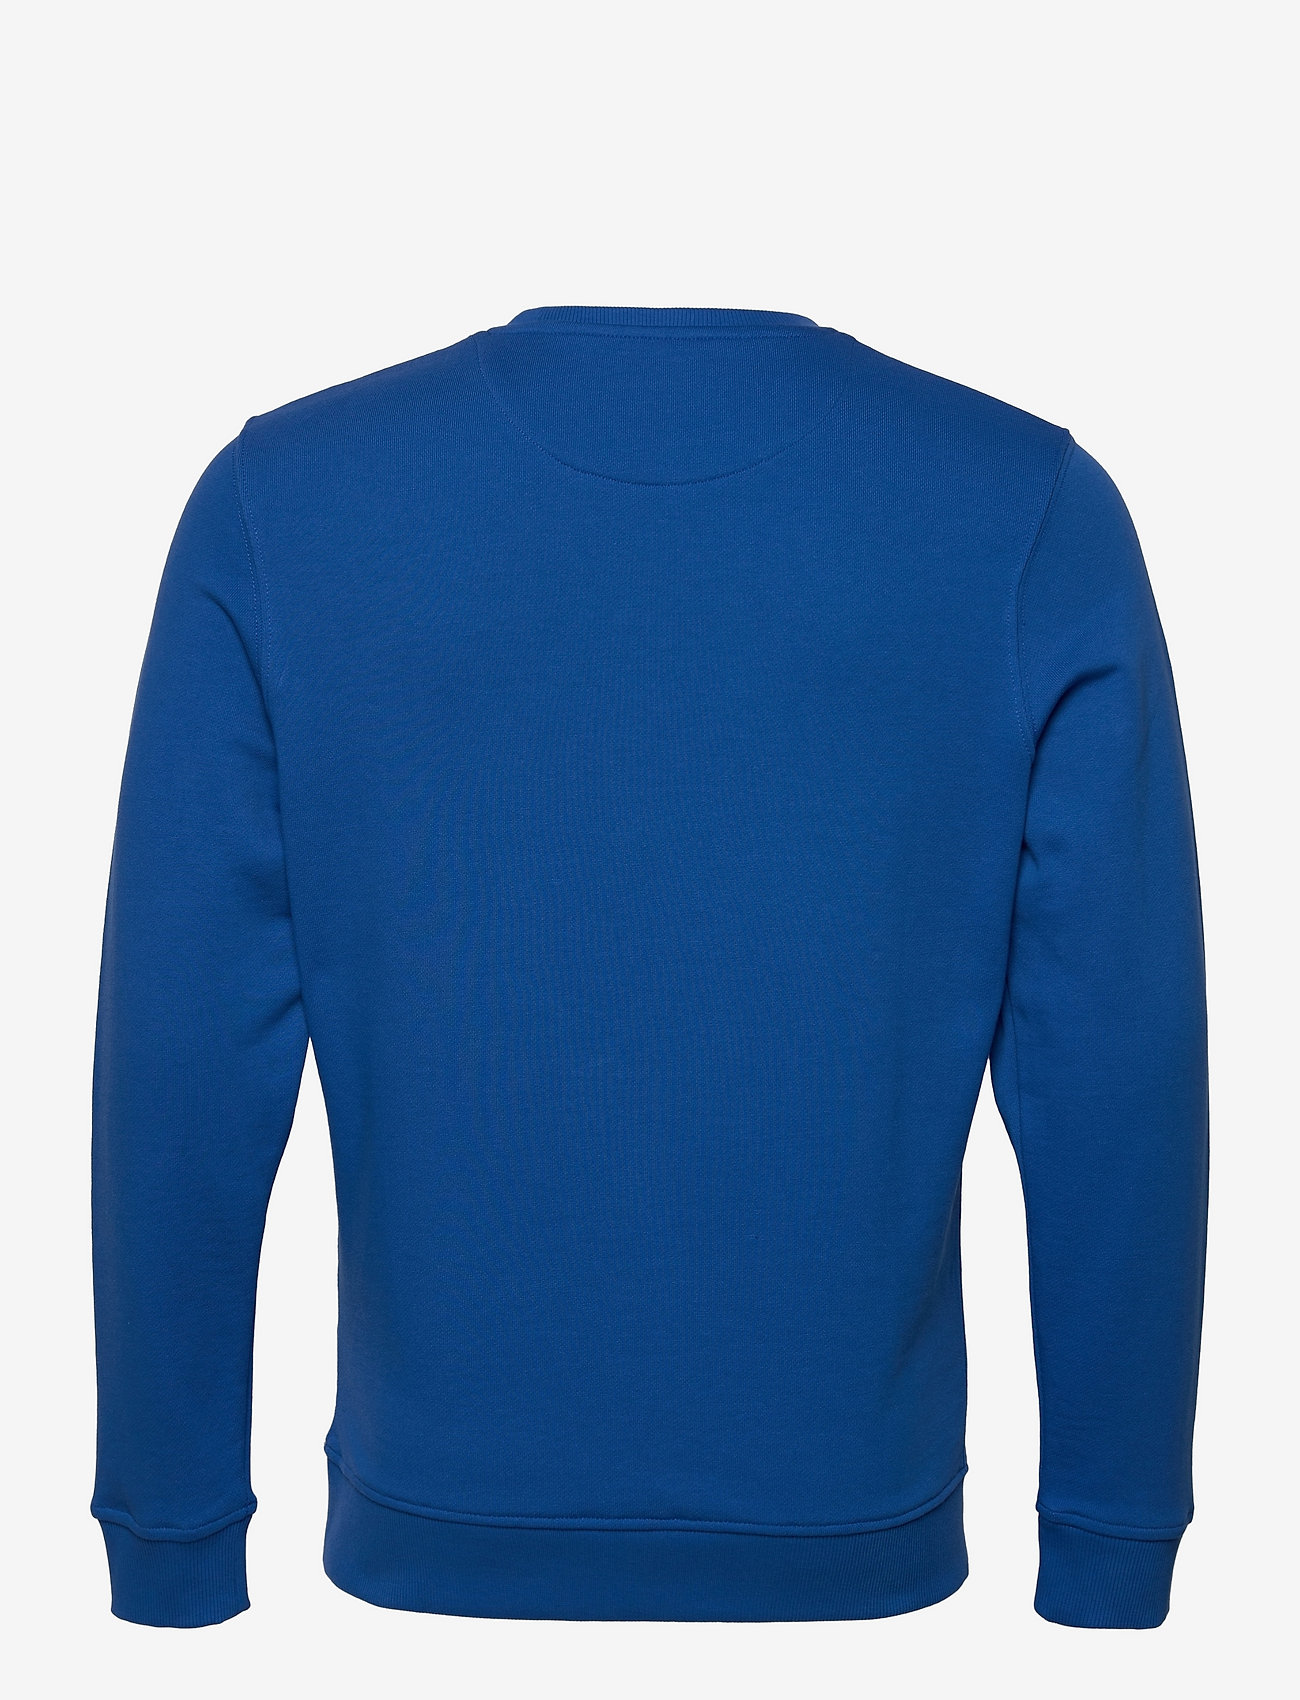 Lyle & Scott - Crew Neck Sweatshirt - truien - bright blue - 1